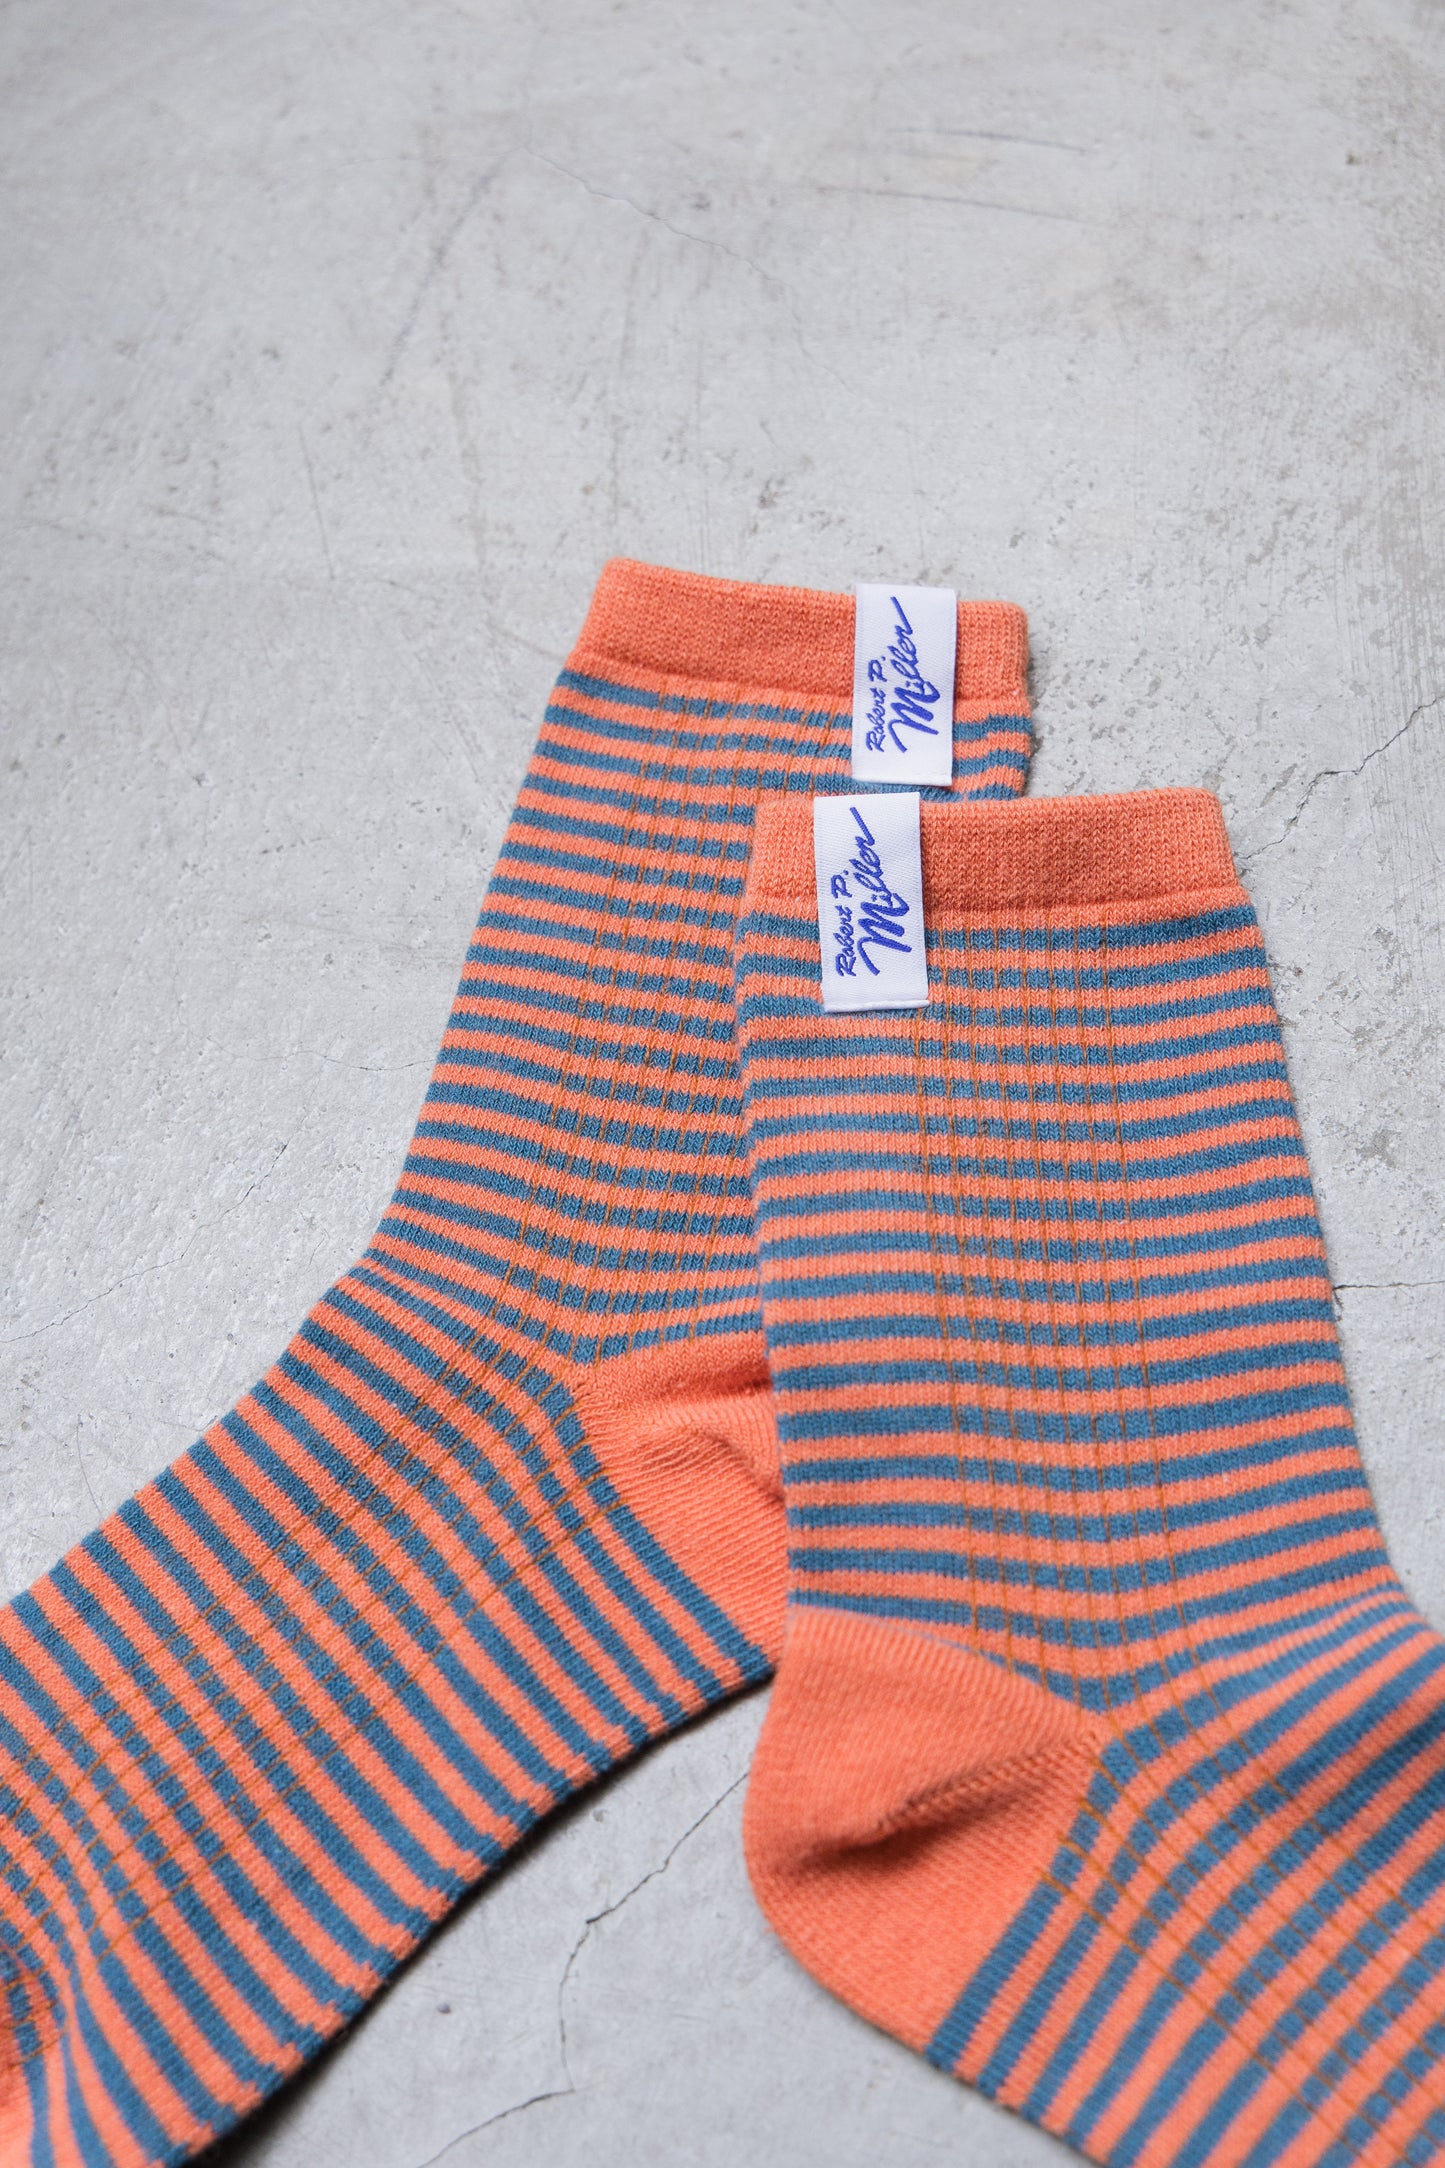 Robert p miller Striped Socks